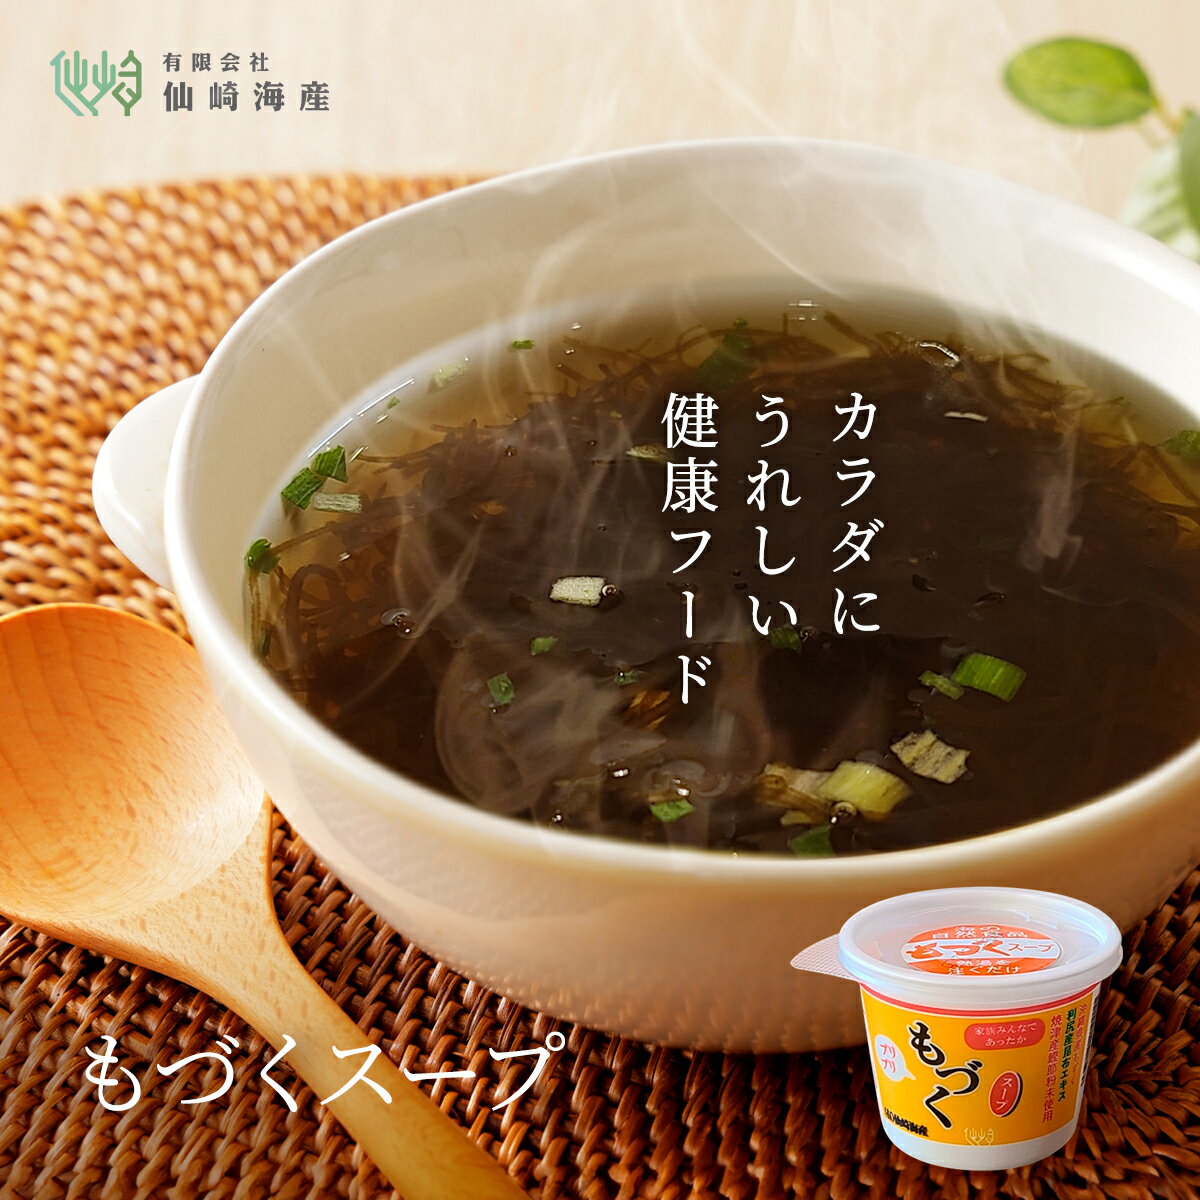 [生もづくスープカップ] 生もずく スープ 1食11kcal 醤油味 母の日 常温保存 沖縄県産 太もづく もずく 低カロリー …